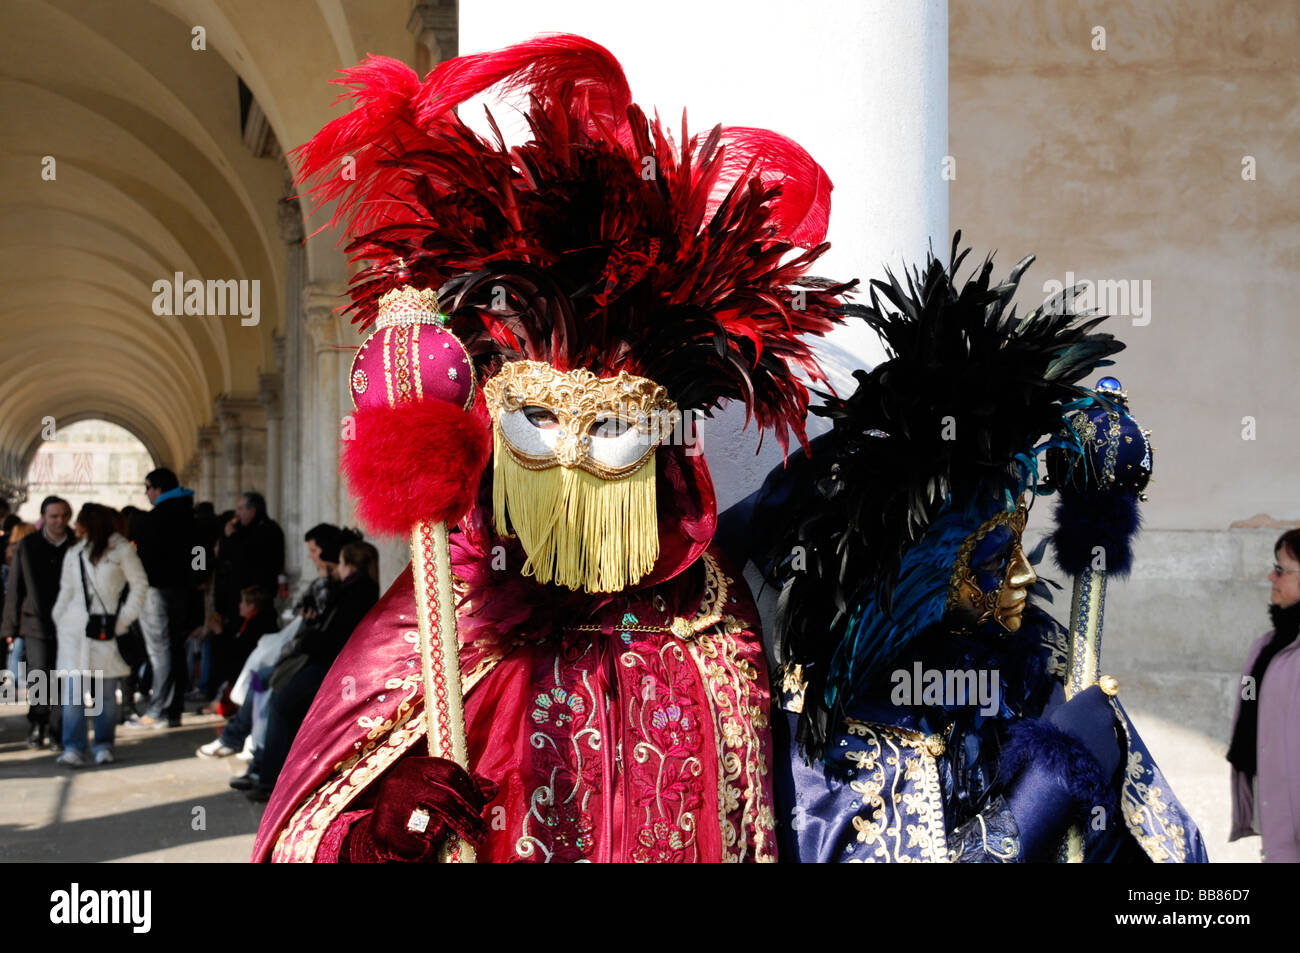 Masques, Carnevale 2009, Carnaval de Venise, Vénétie, Italie, Europe Banque D'Images